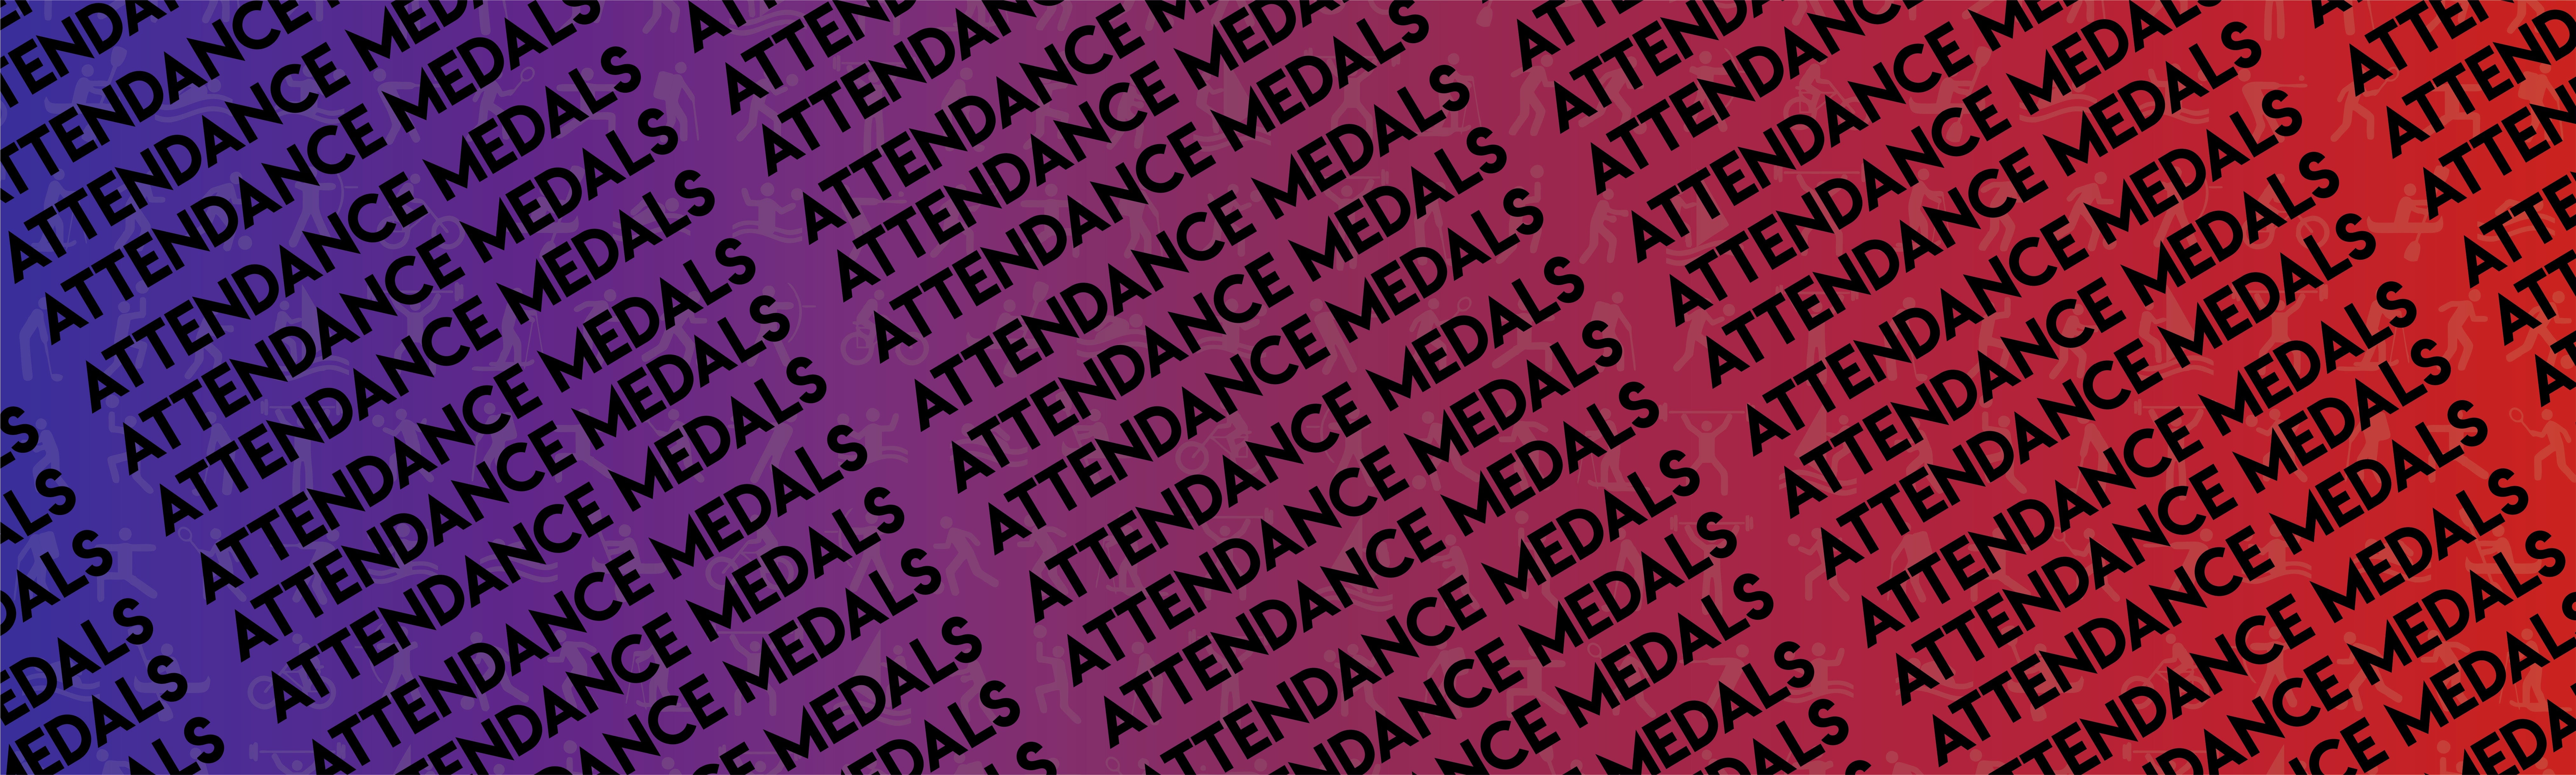 Attendance Medals